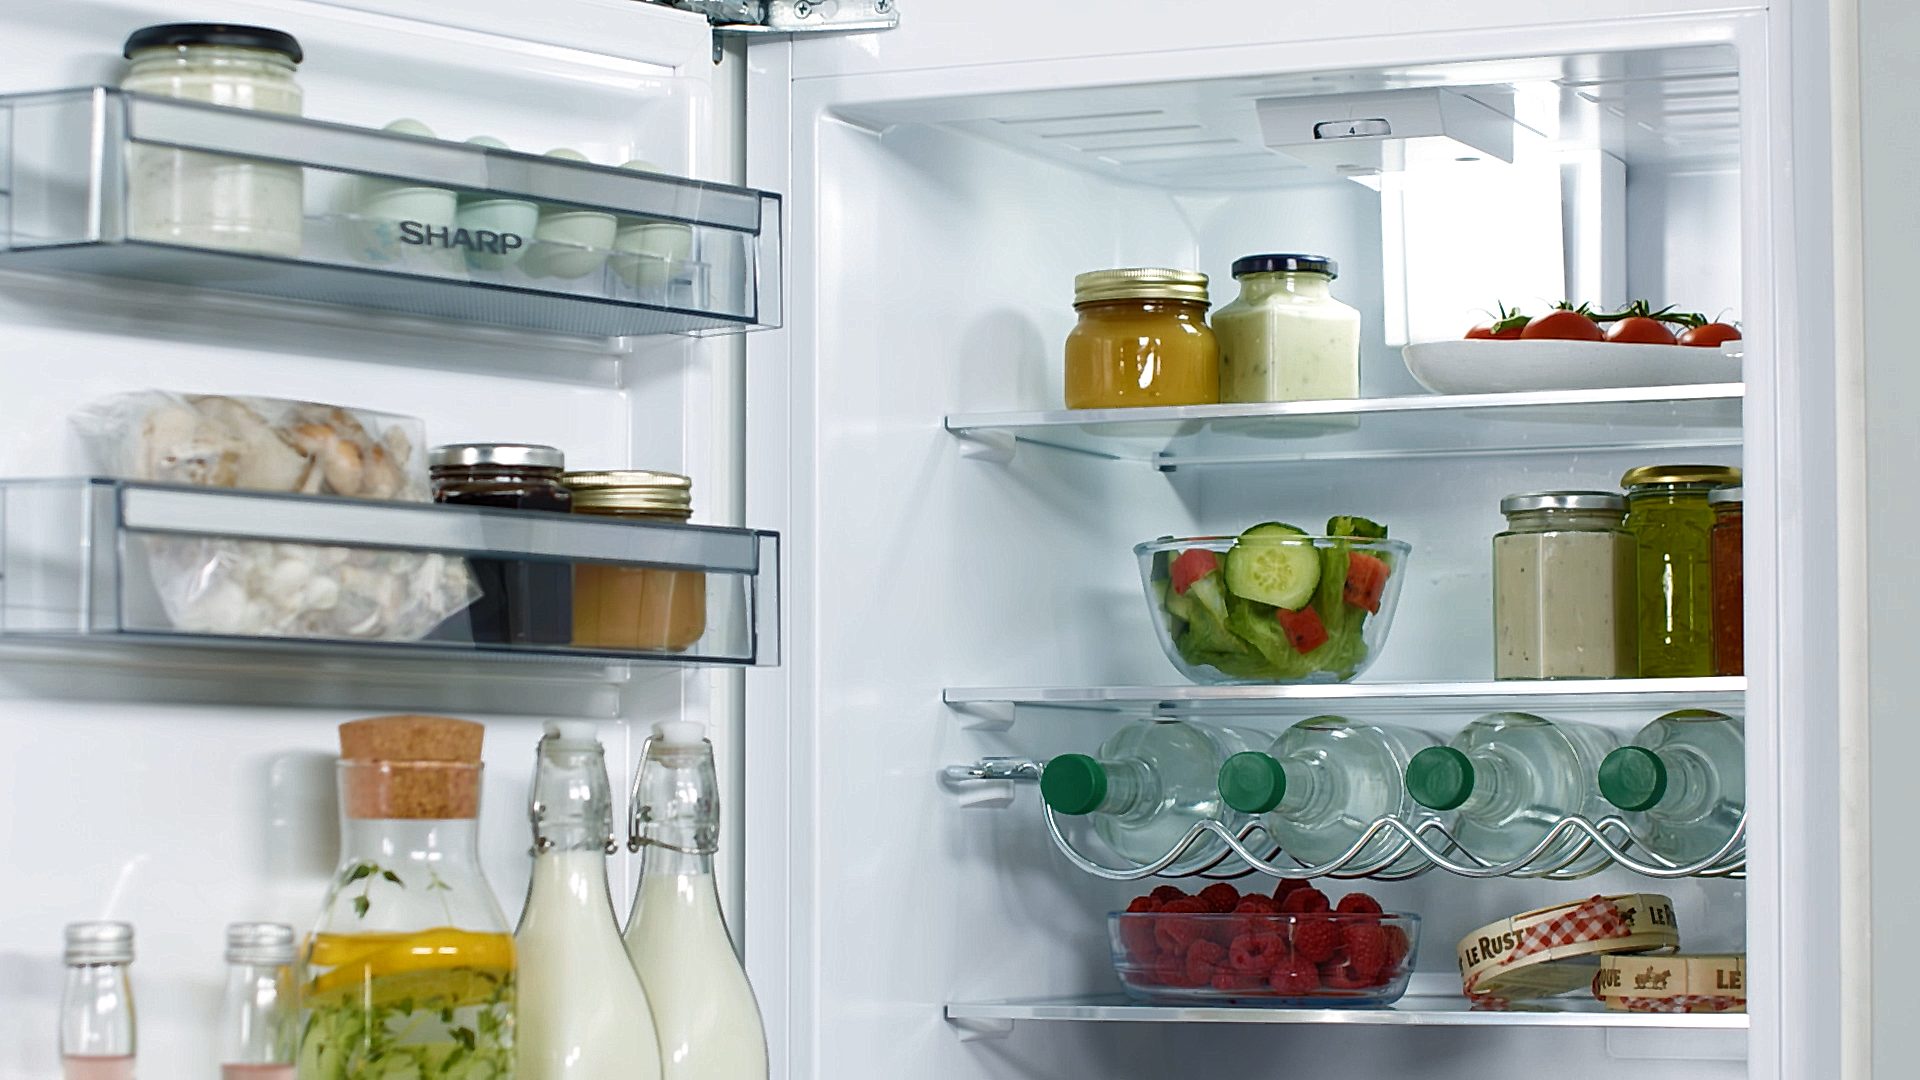 Tii cura de slabire? Iata 5 alimente pe care sa le ai TOT TIMPUL in frigider